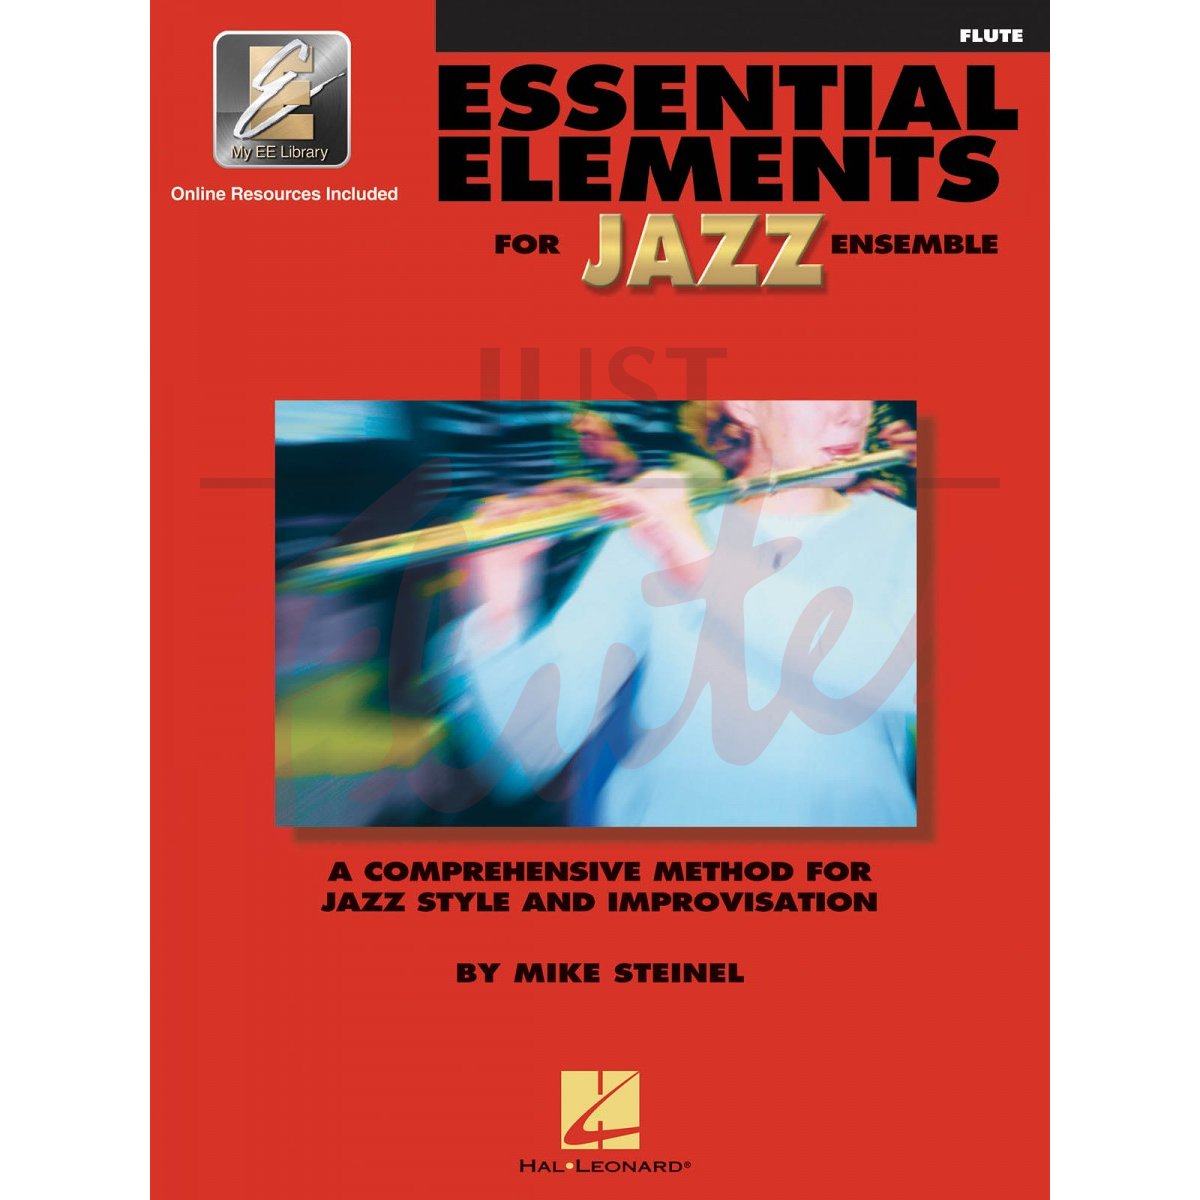 Essential Elements for Jazz Ensemble [Flute]